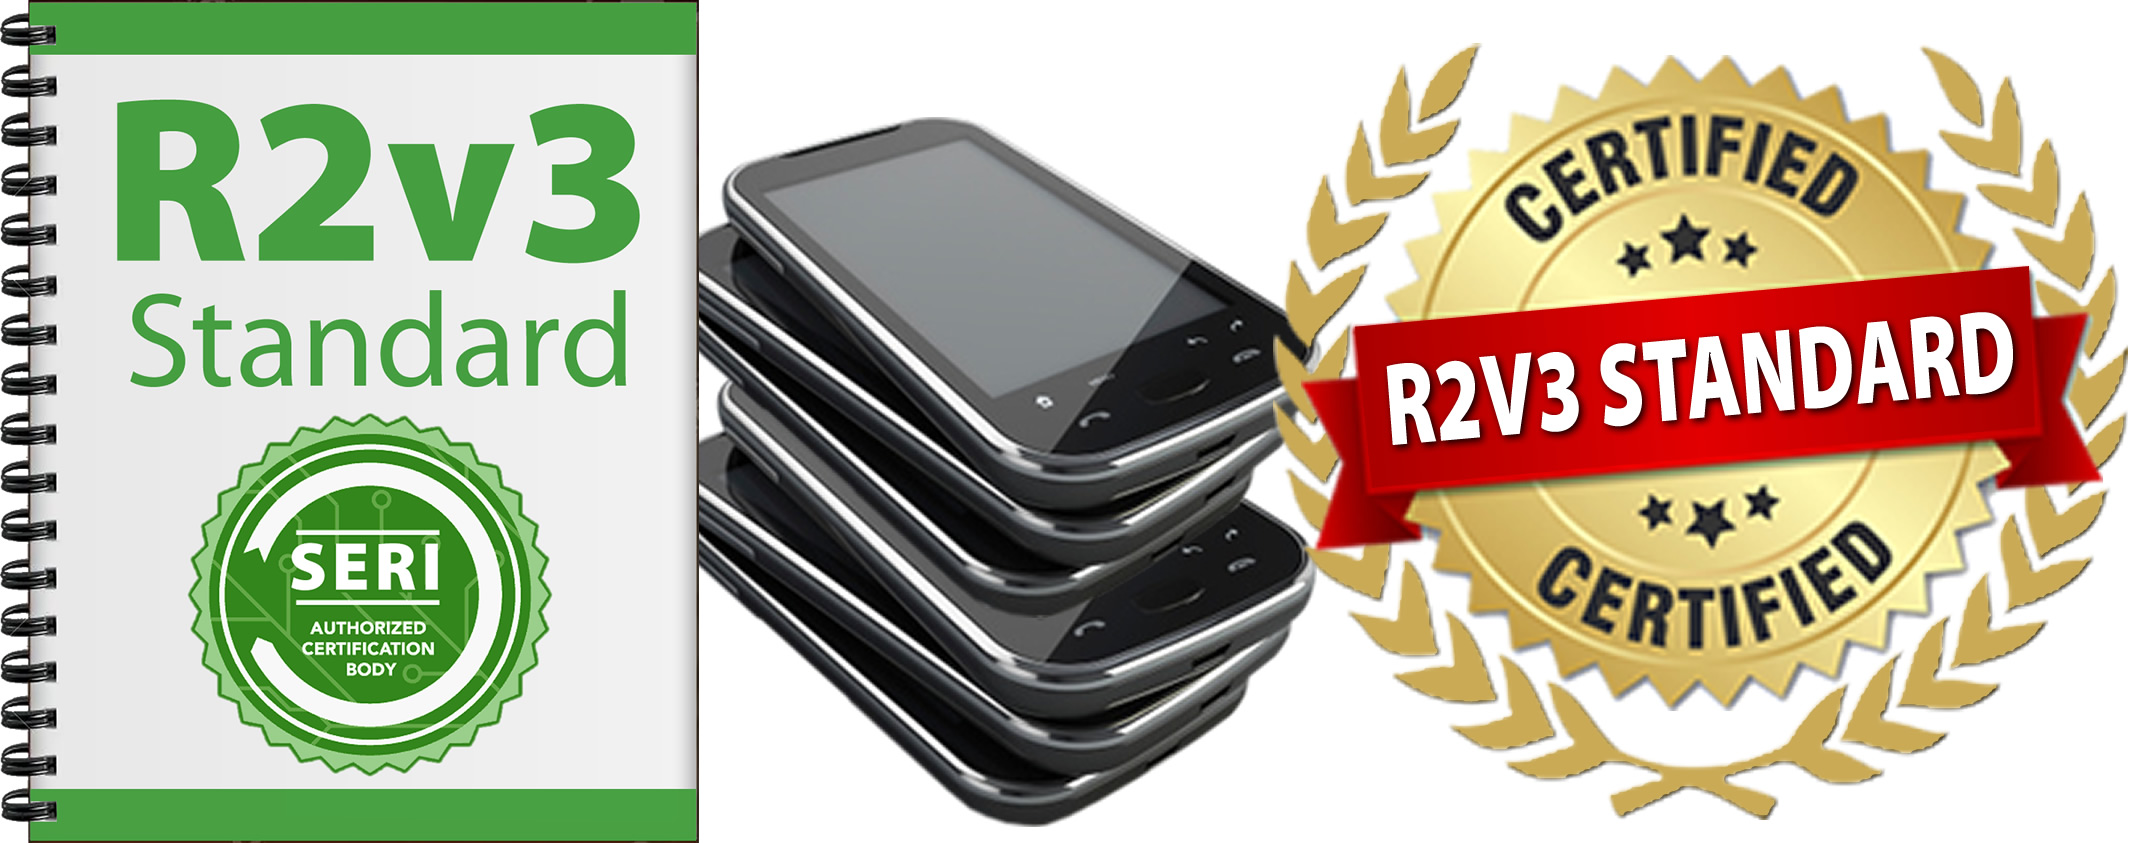 Verwerkingsoplossingen van FutureDial voor mobiele apparaten maken smartphone-refurbishers direct klaar voor R2v3.